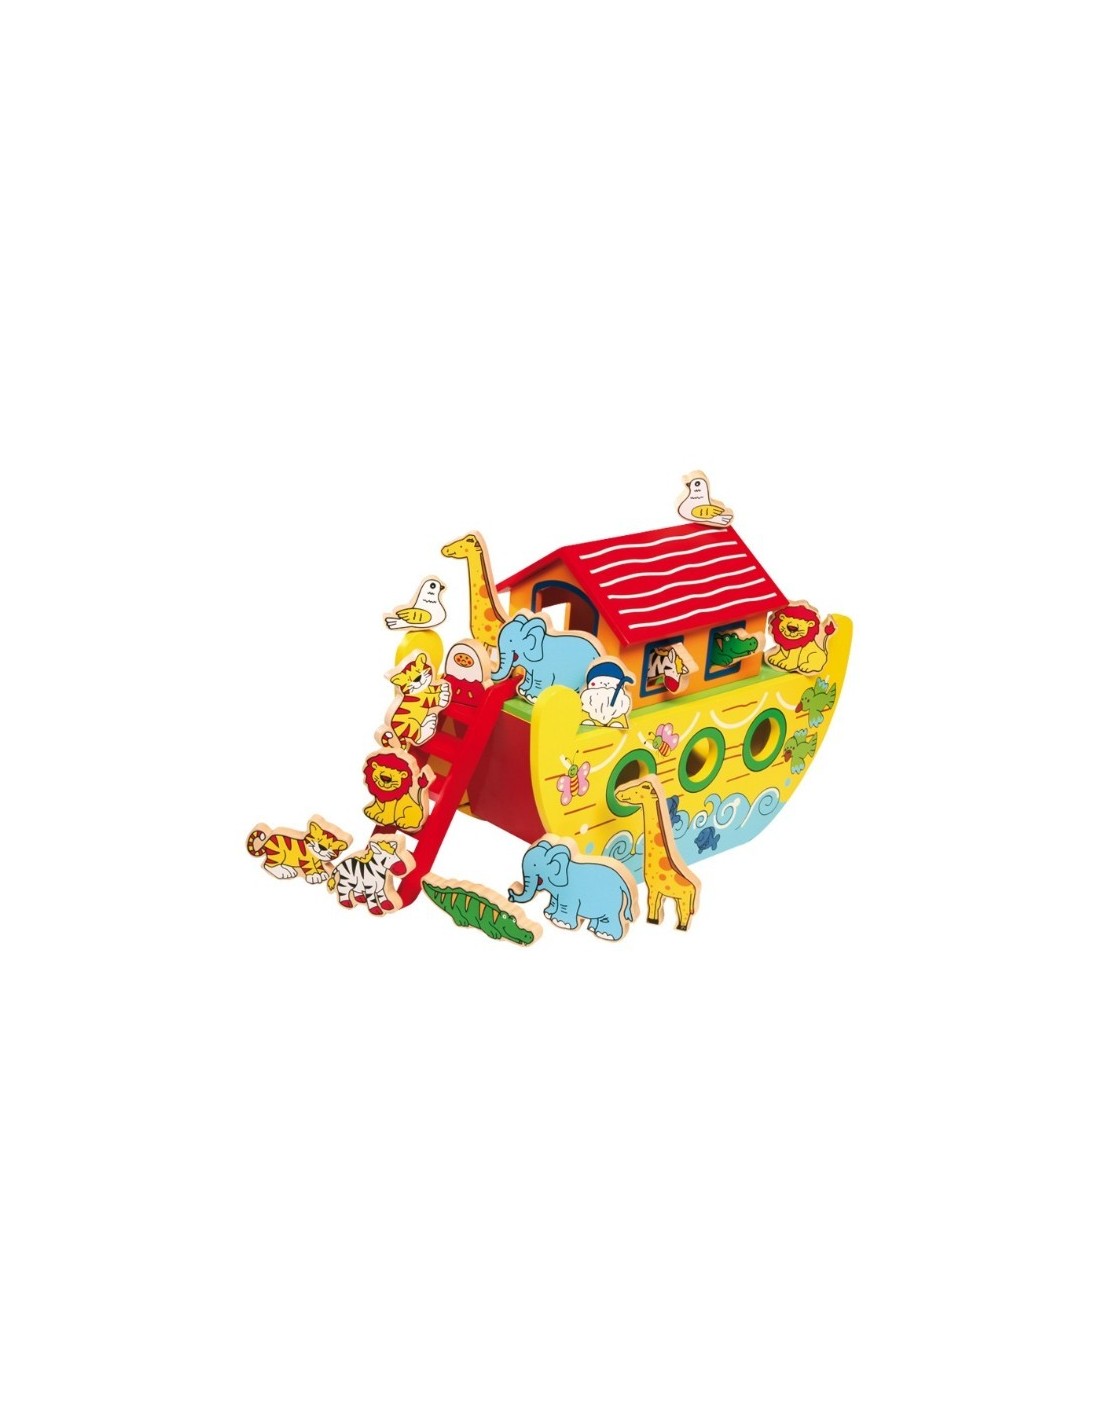 Arca de Noè gran de Fusta joguina tradicional amb accessoris